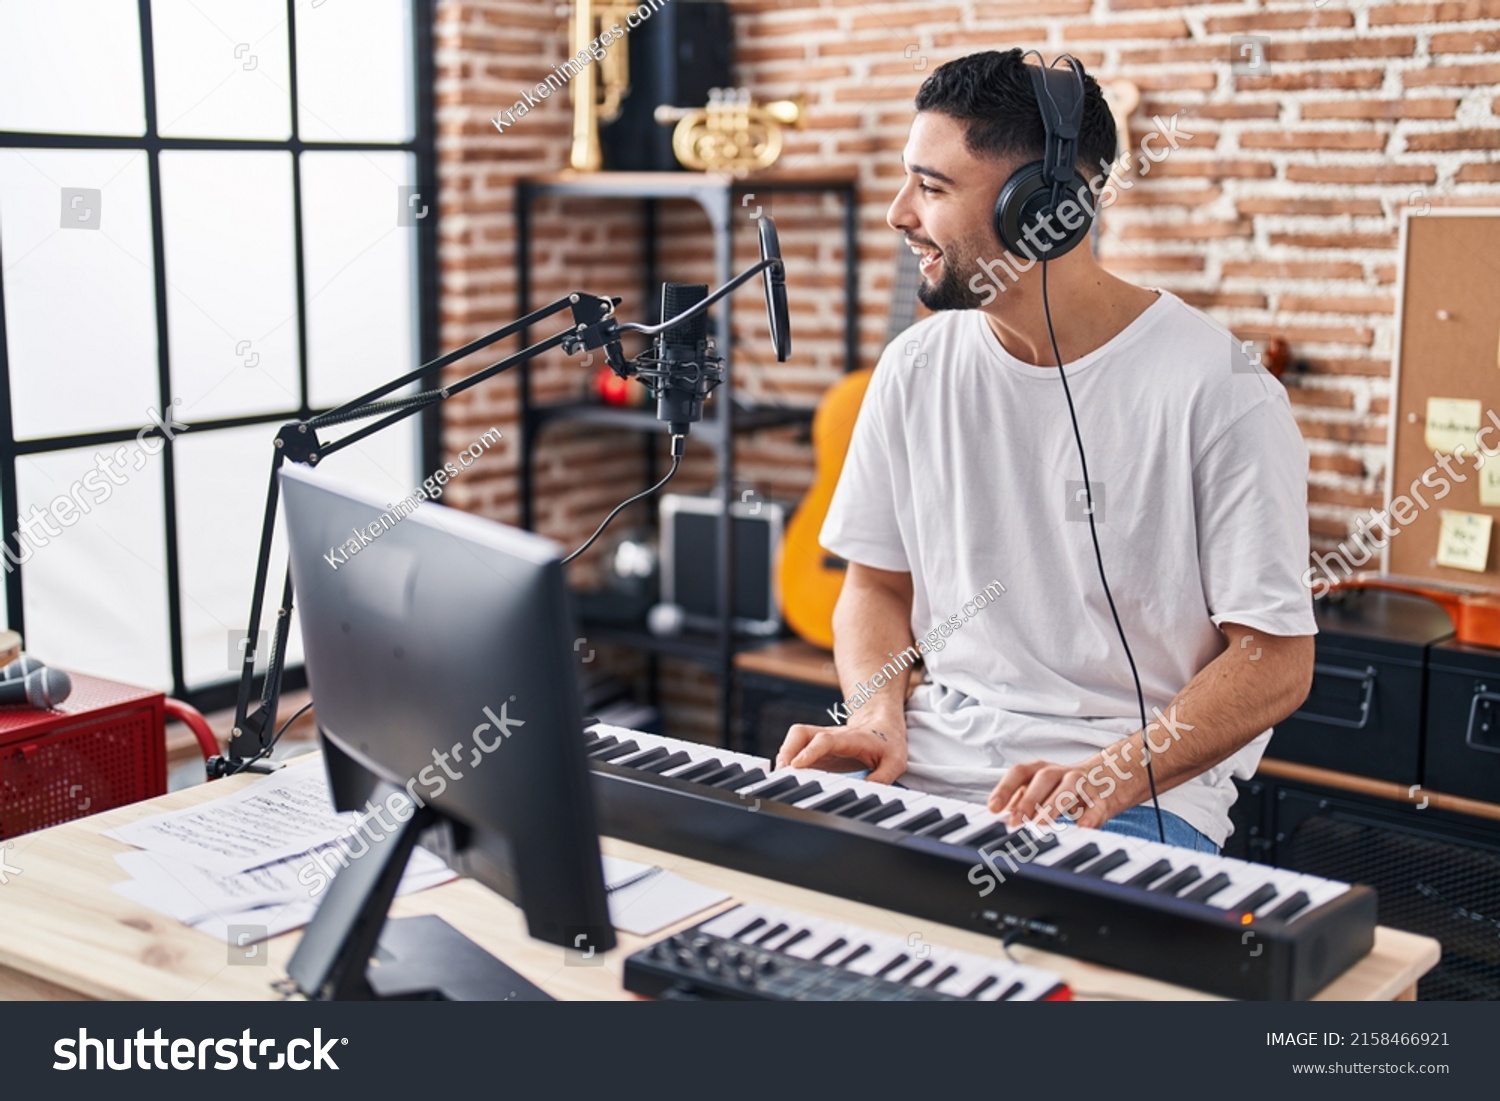 Young arab man musician playing piano keyboard at music studio #2158466921